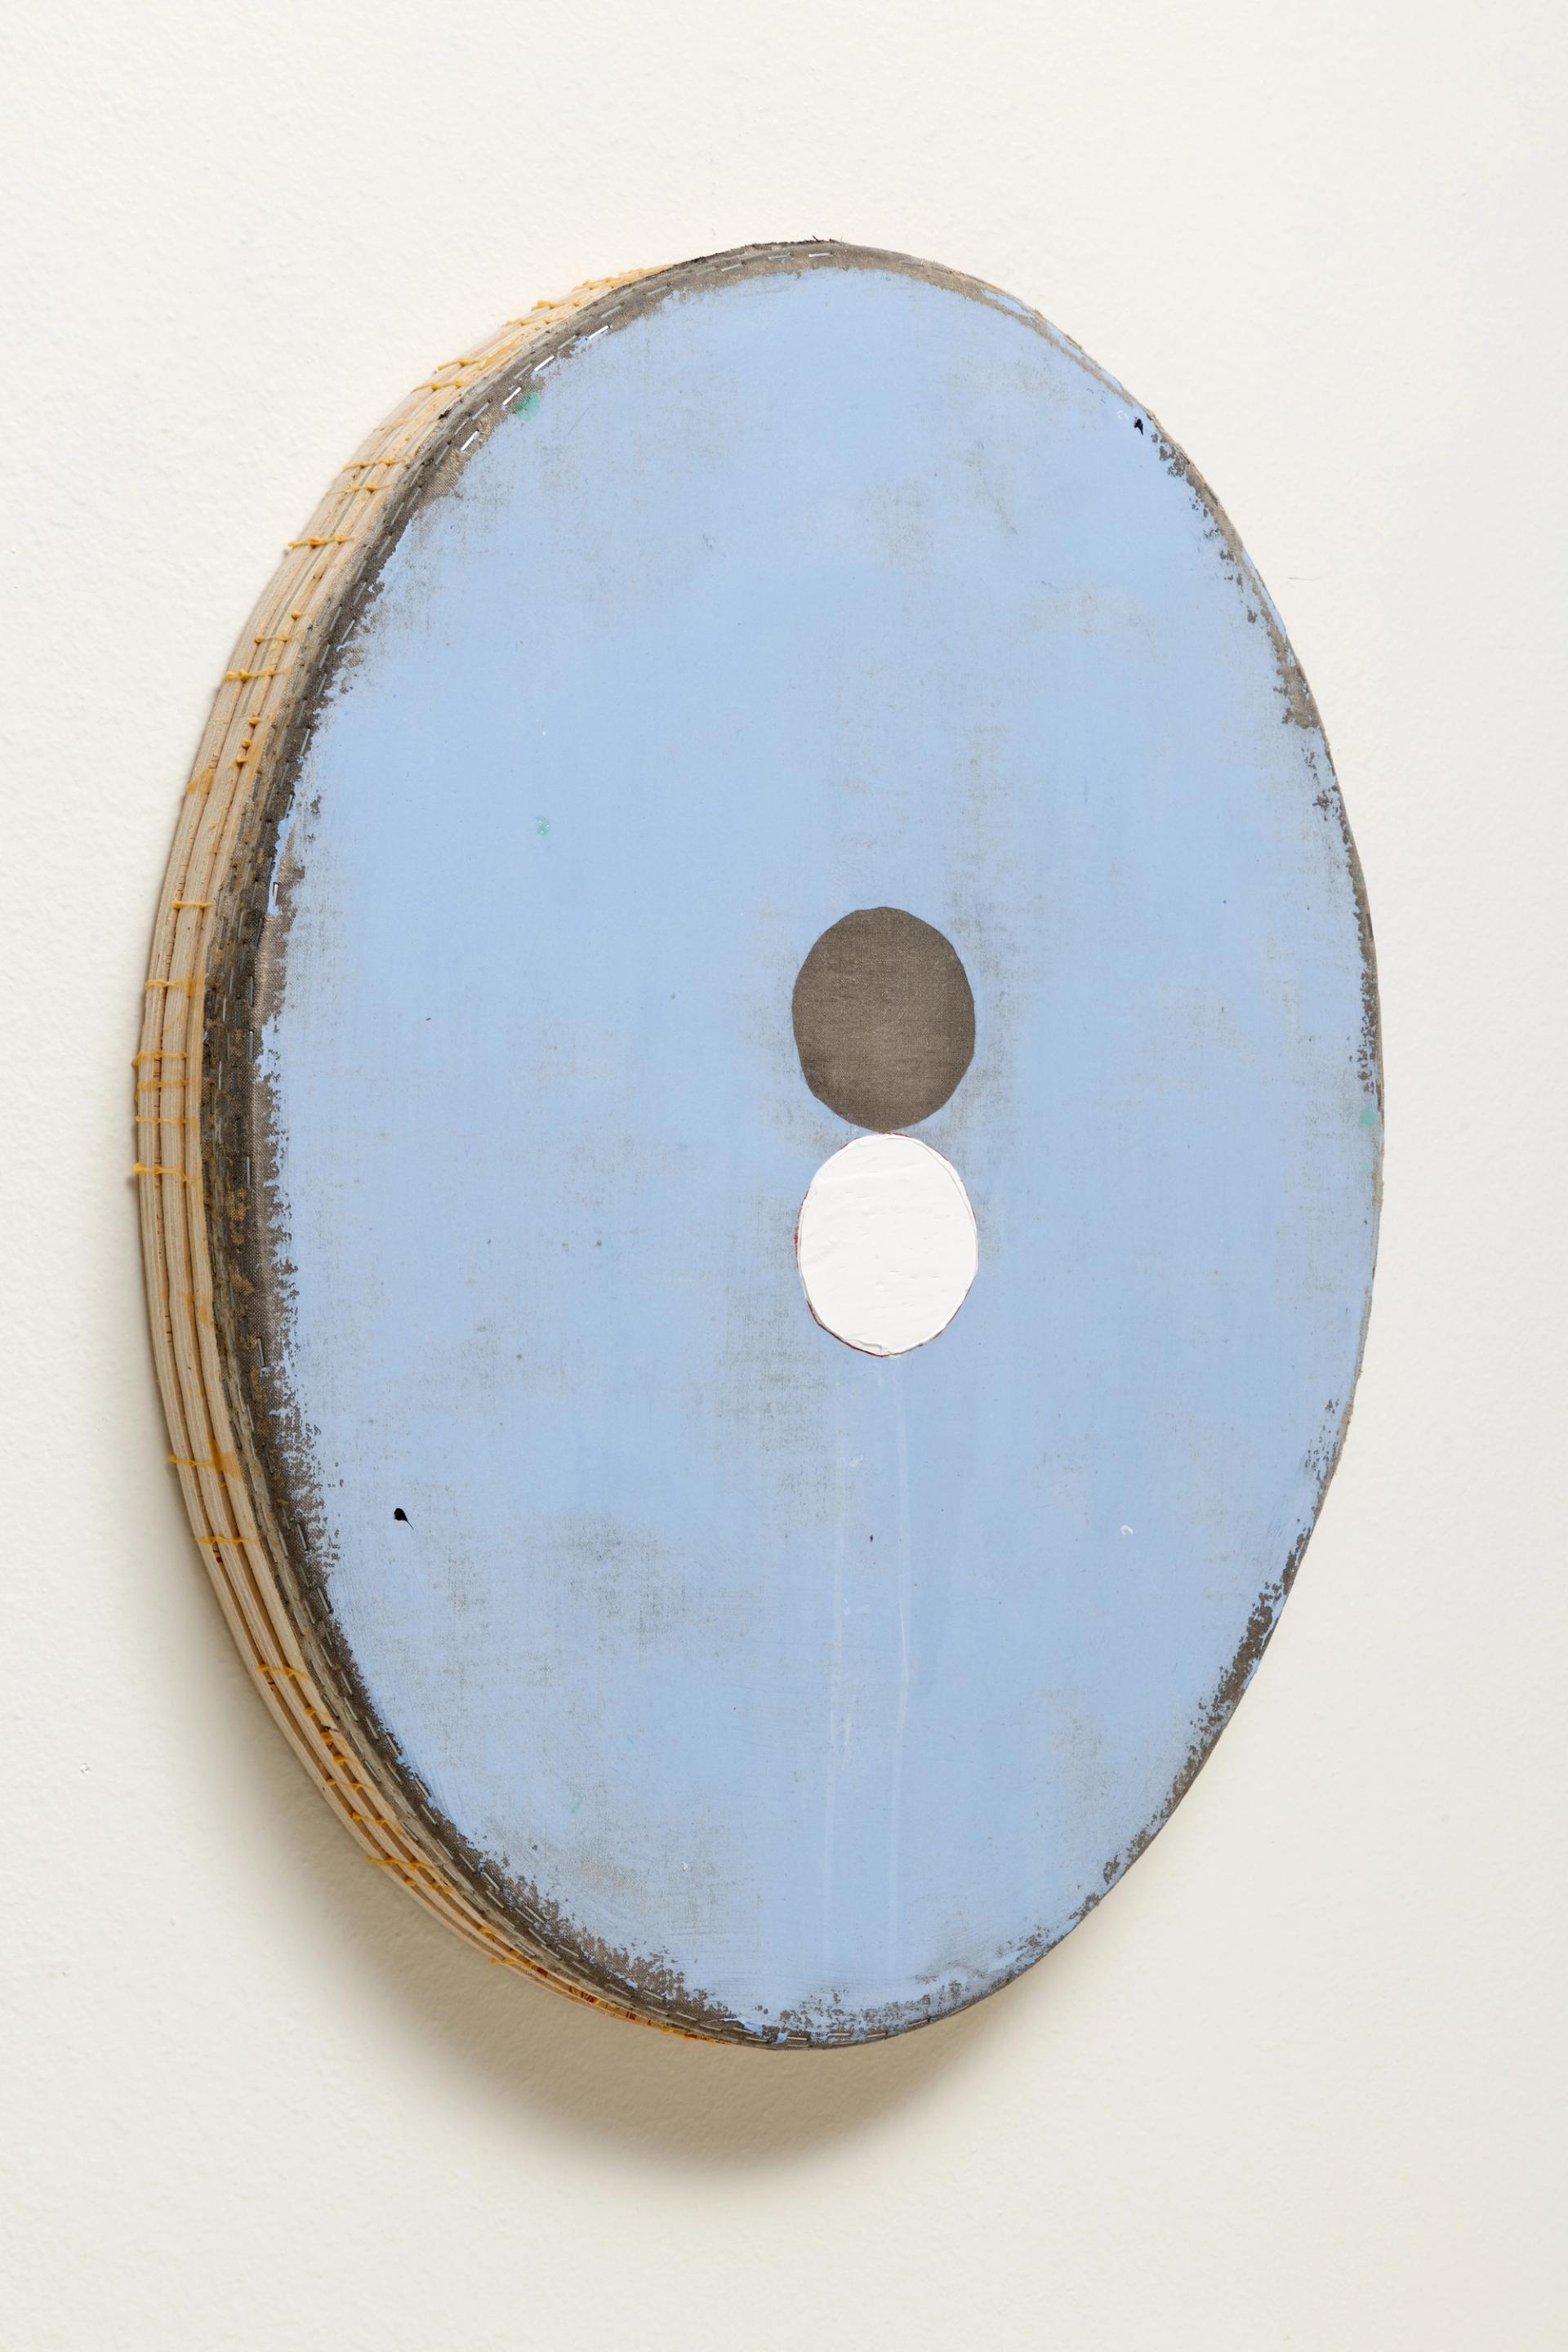 Otis Jones, Blue With Gray and White Circles, 2022, acrylique sur toile sur panneau de bois. Courtesy de l’artiste et Semiose, Paris